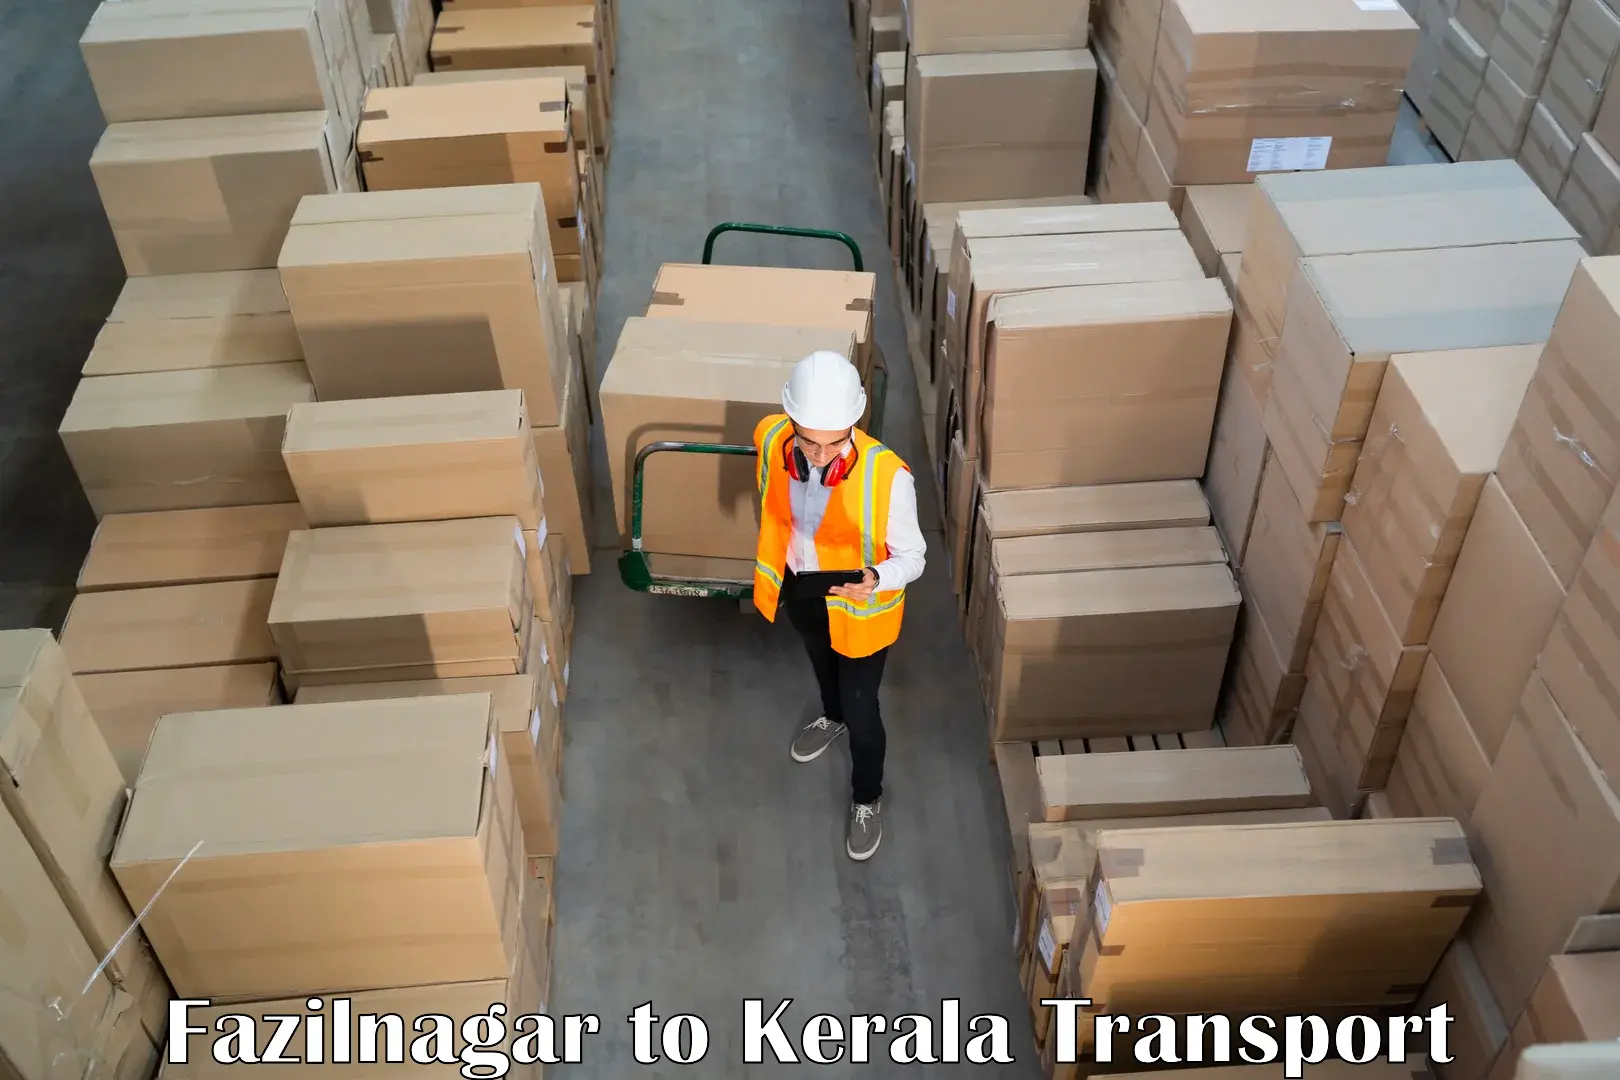 Goods delivery service Fazilnagar to Kakkayam